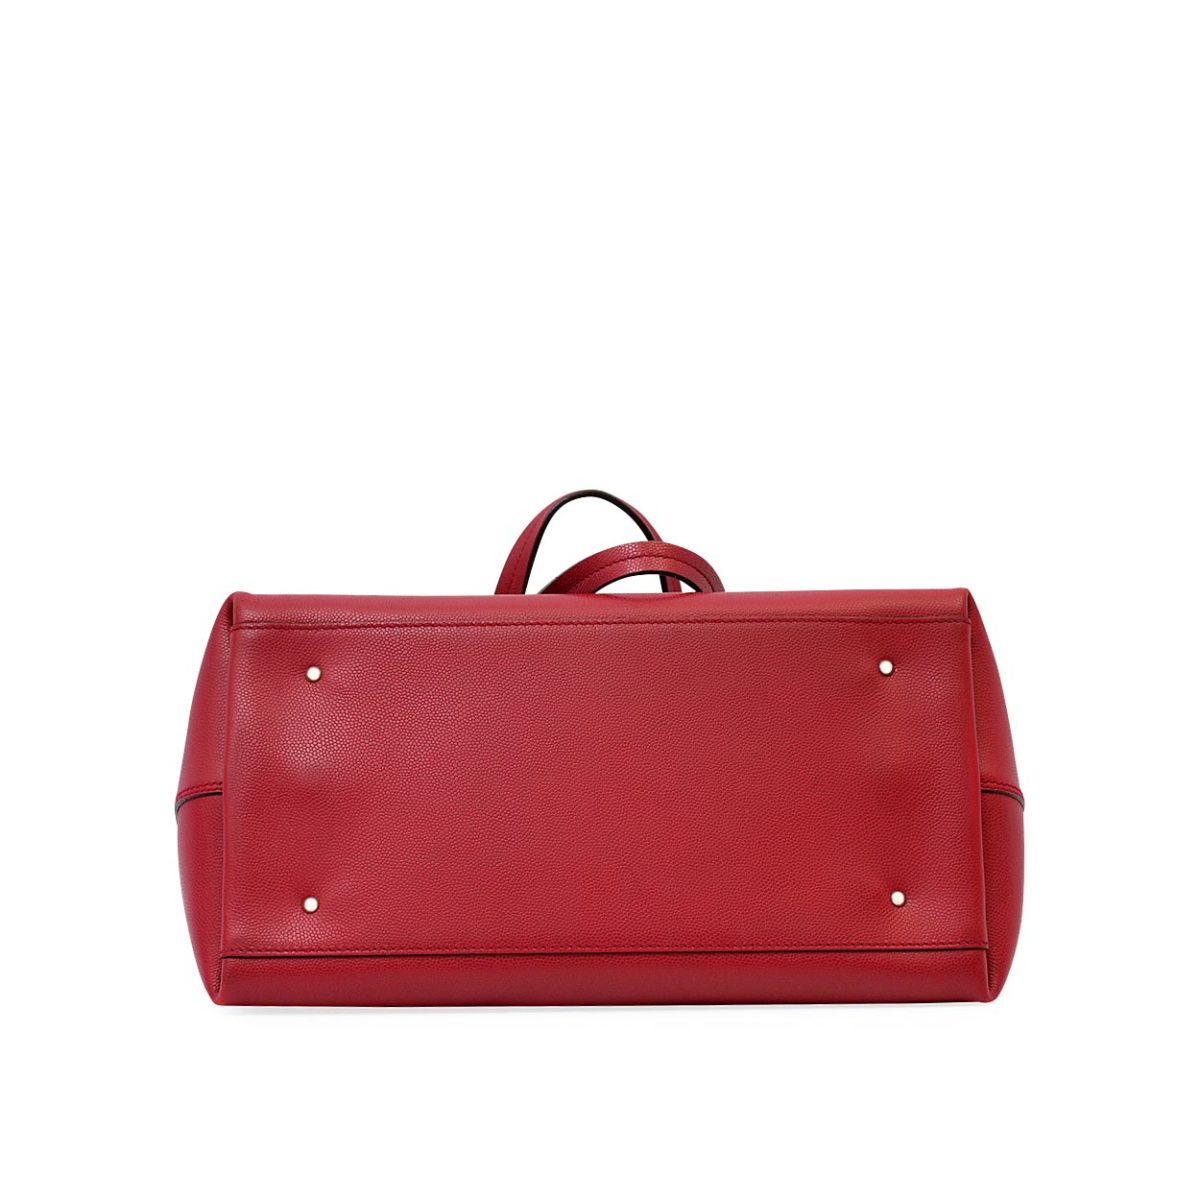 SALVATORE FERRAGAMO Leather Tote Red | Luxity